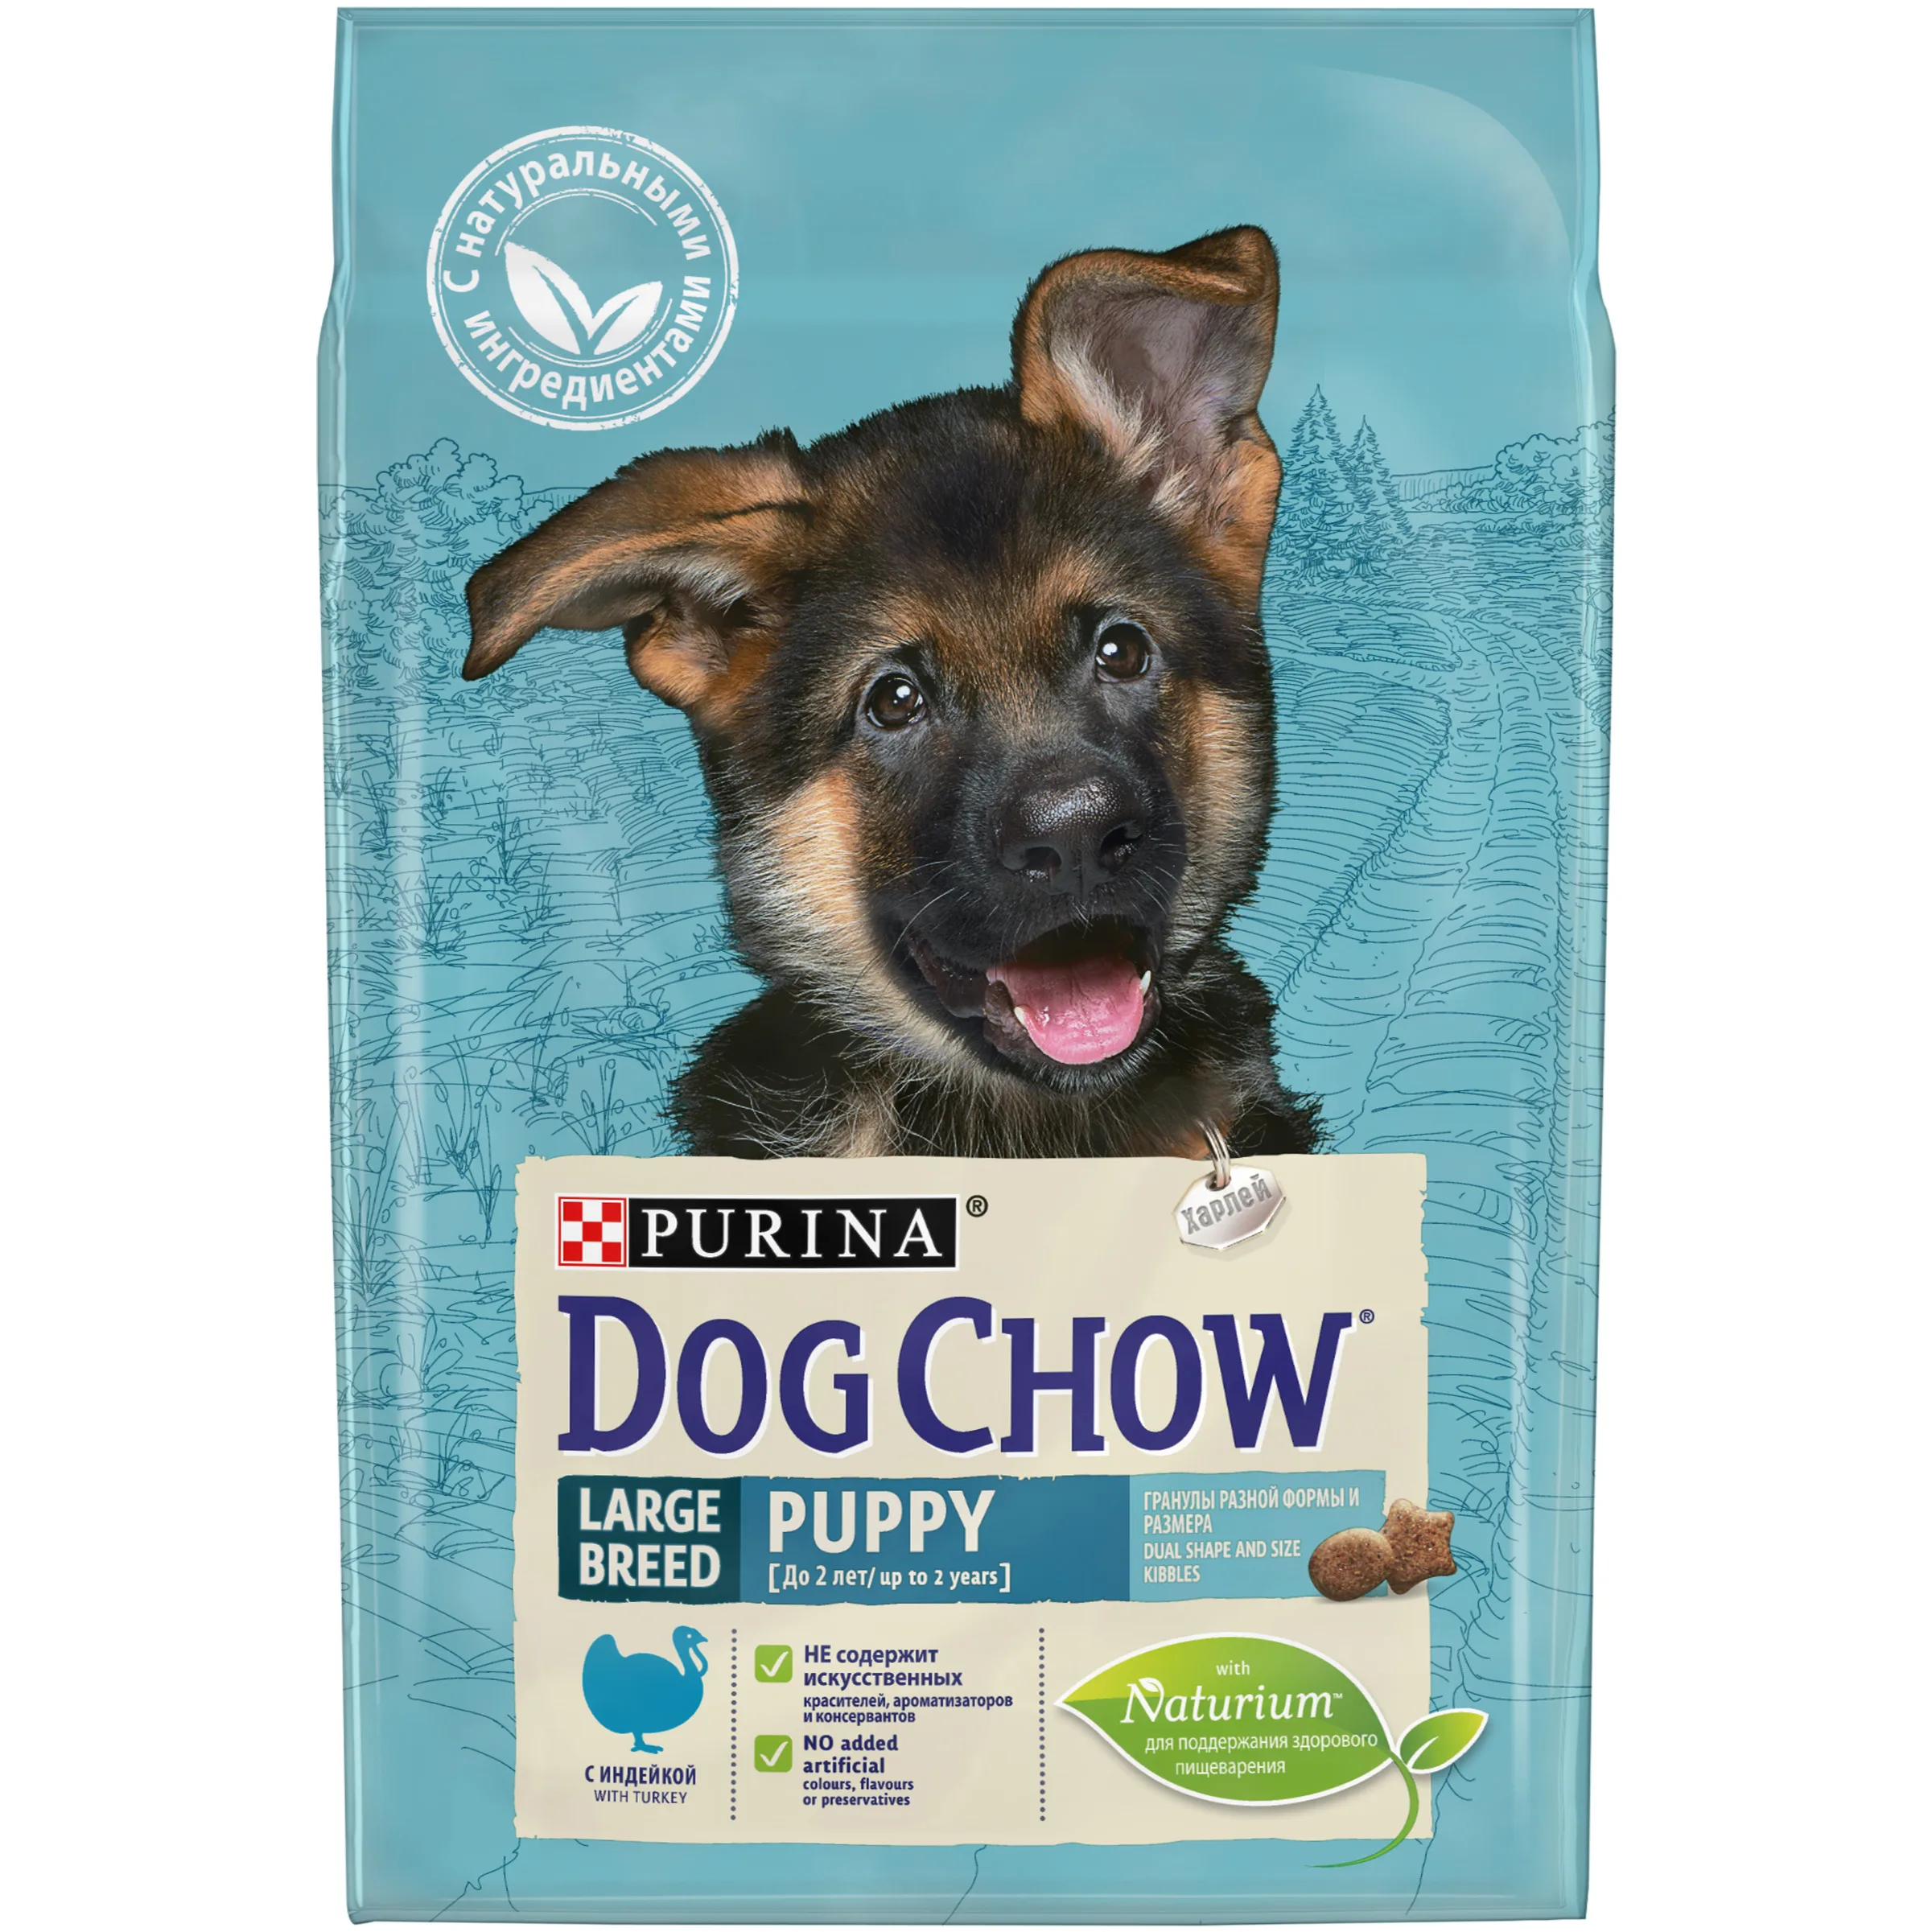 Сухой корм Dog Chow для щенков крупных пород, с индейкой, Пакет, 2,5 кг